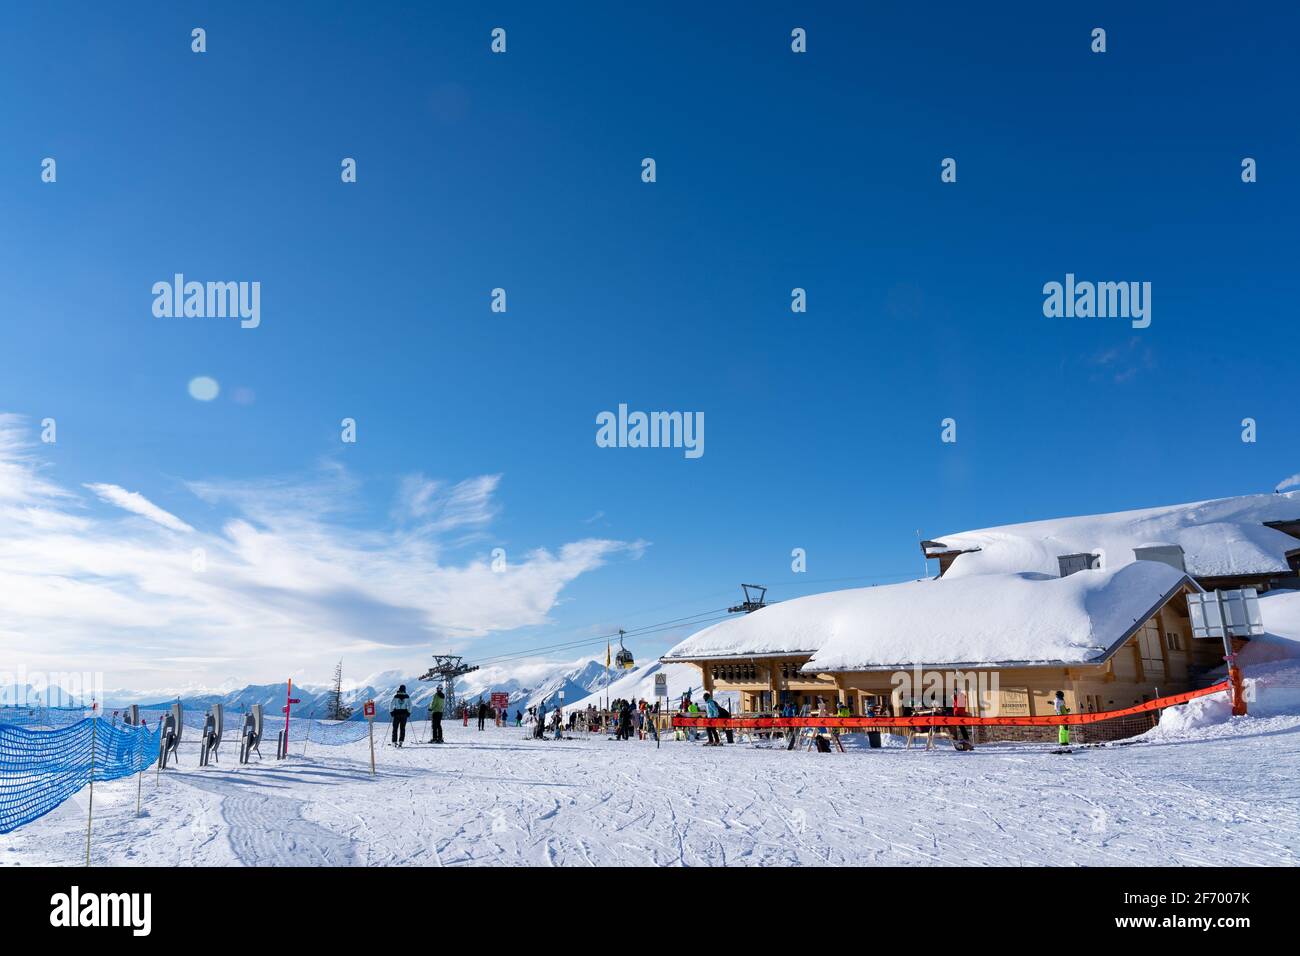 Wintersport-Enthusiasten im Restaurant Kaeserstatt auf dem Skigebiet Hasliberg Berner Oberland in der Schweiz ausruhen. Geschlossen im Innenbereich um 08 Uhr. Februar Stockfoto